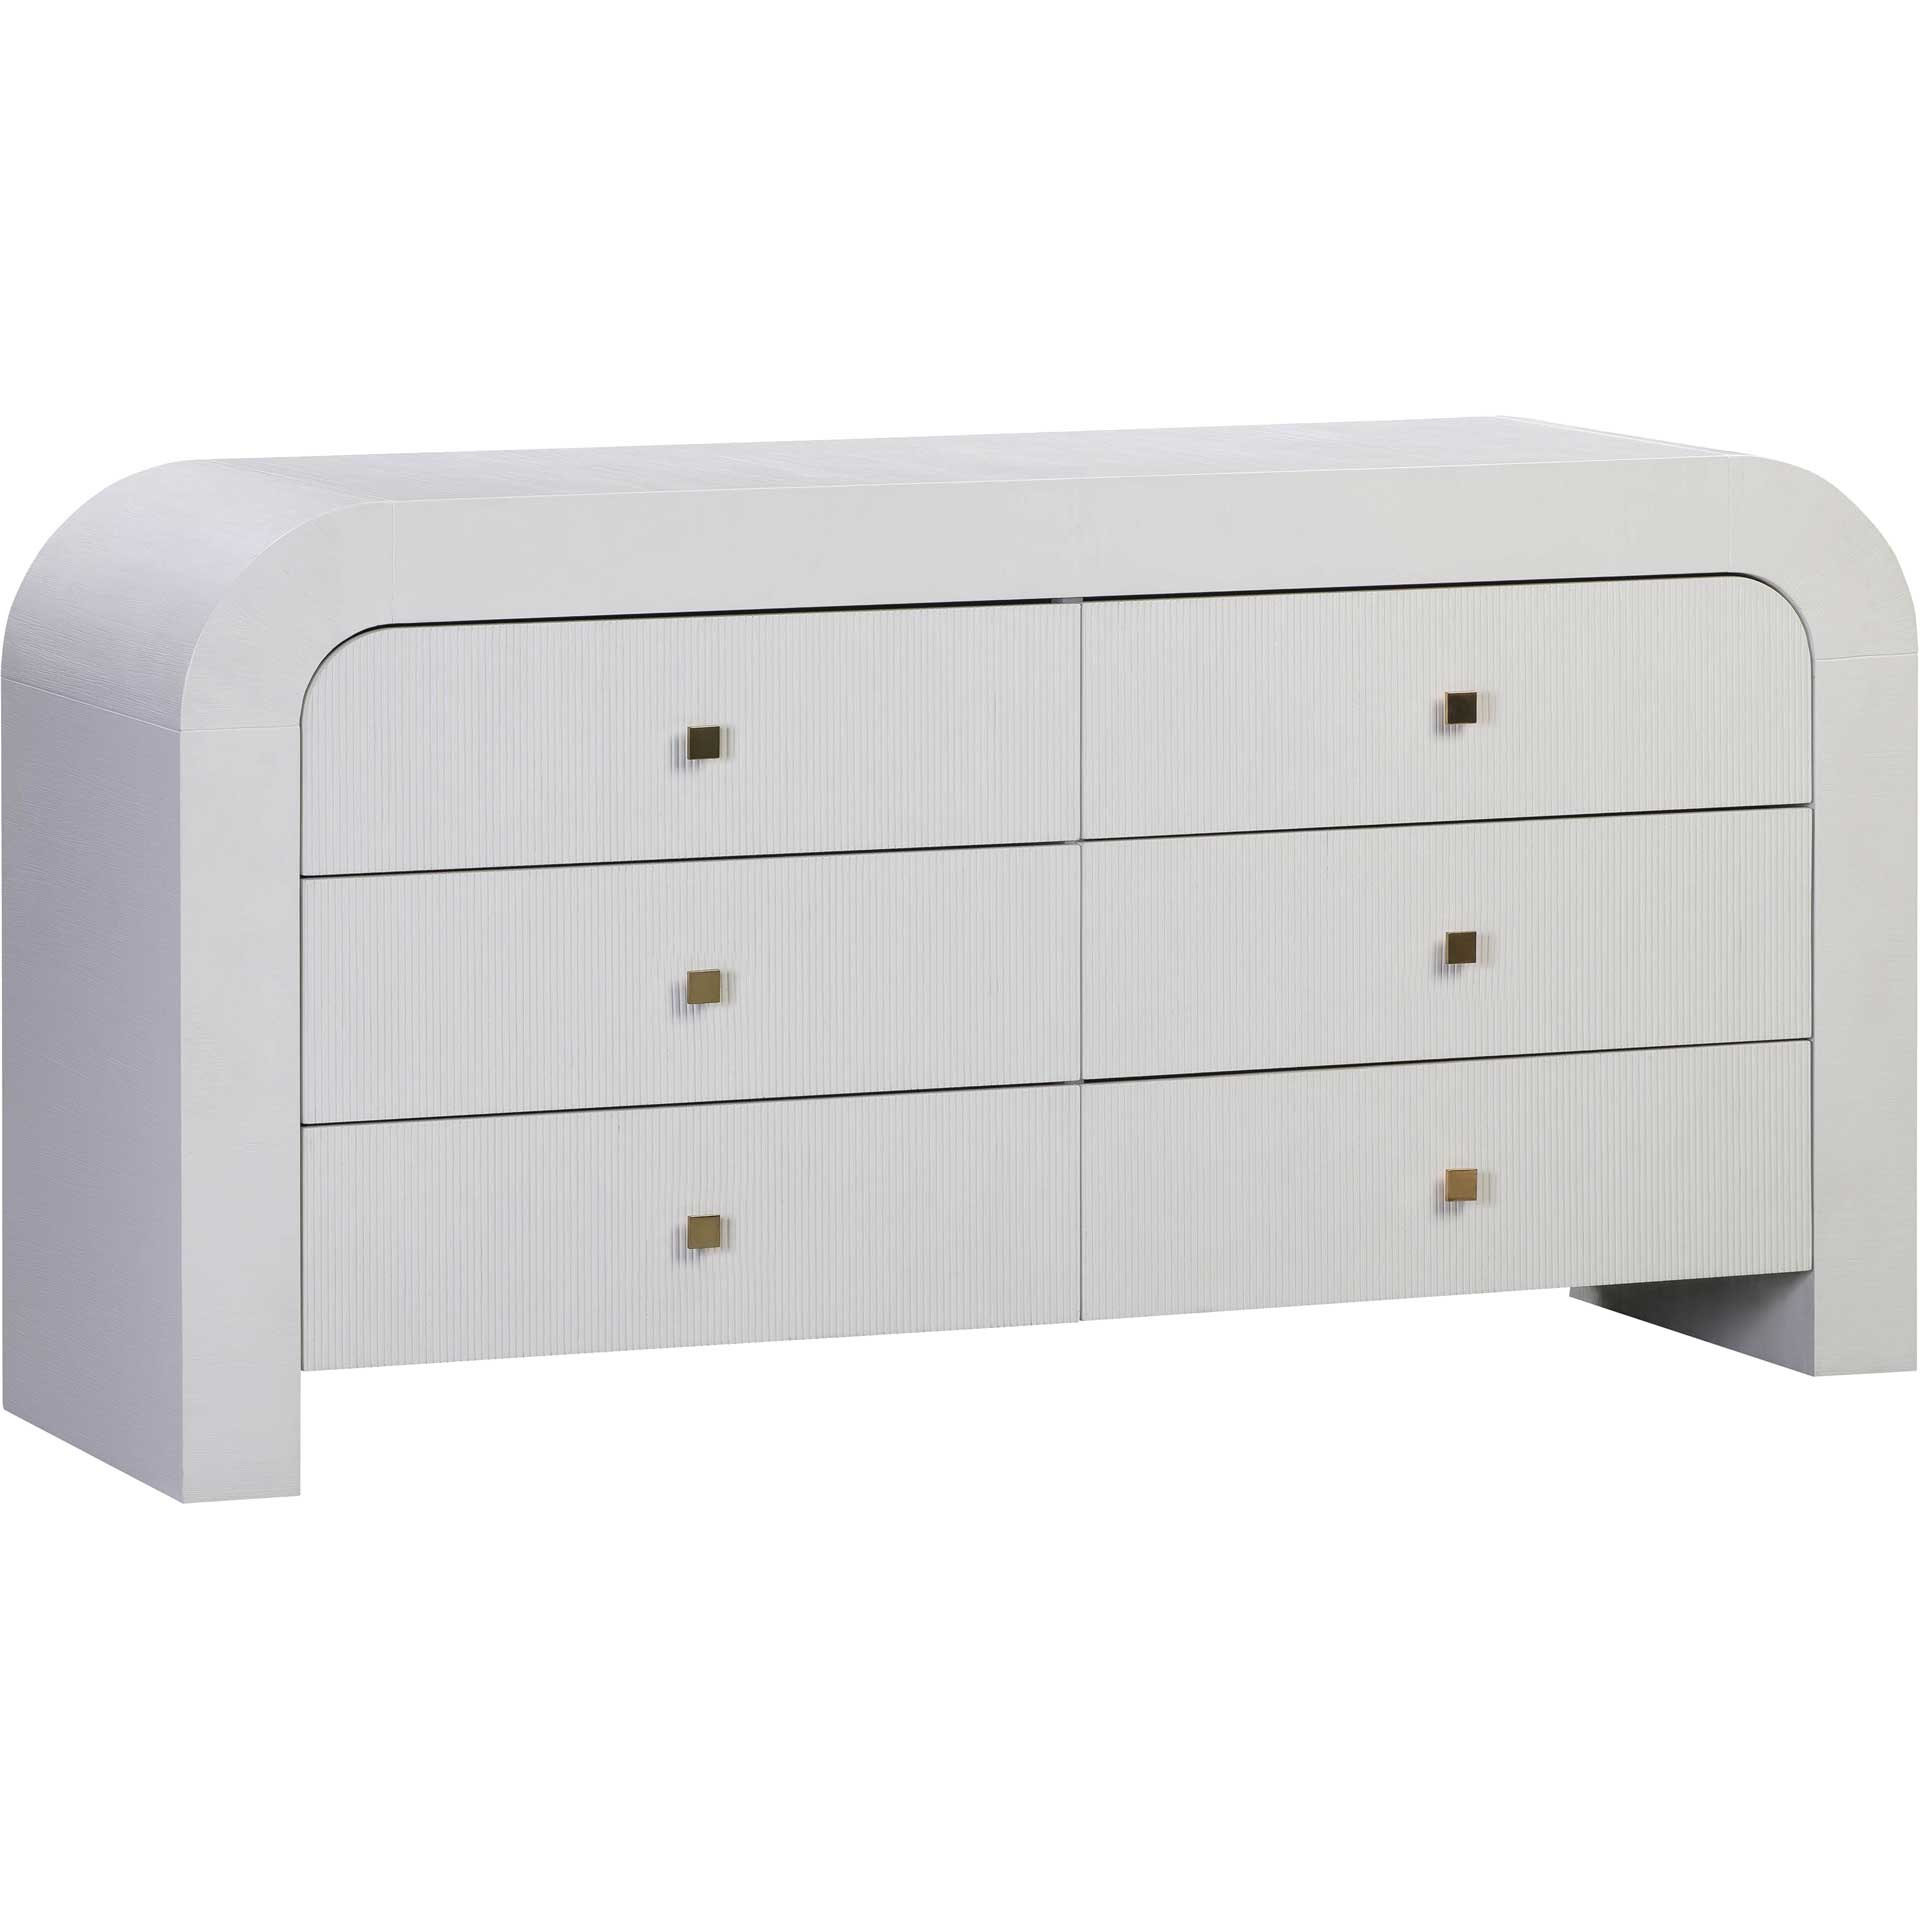 Hydra 6 Drawer Dresser White